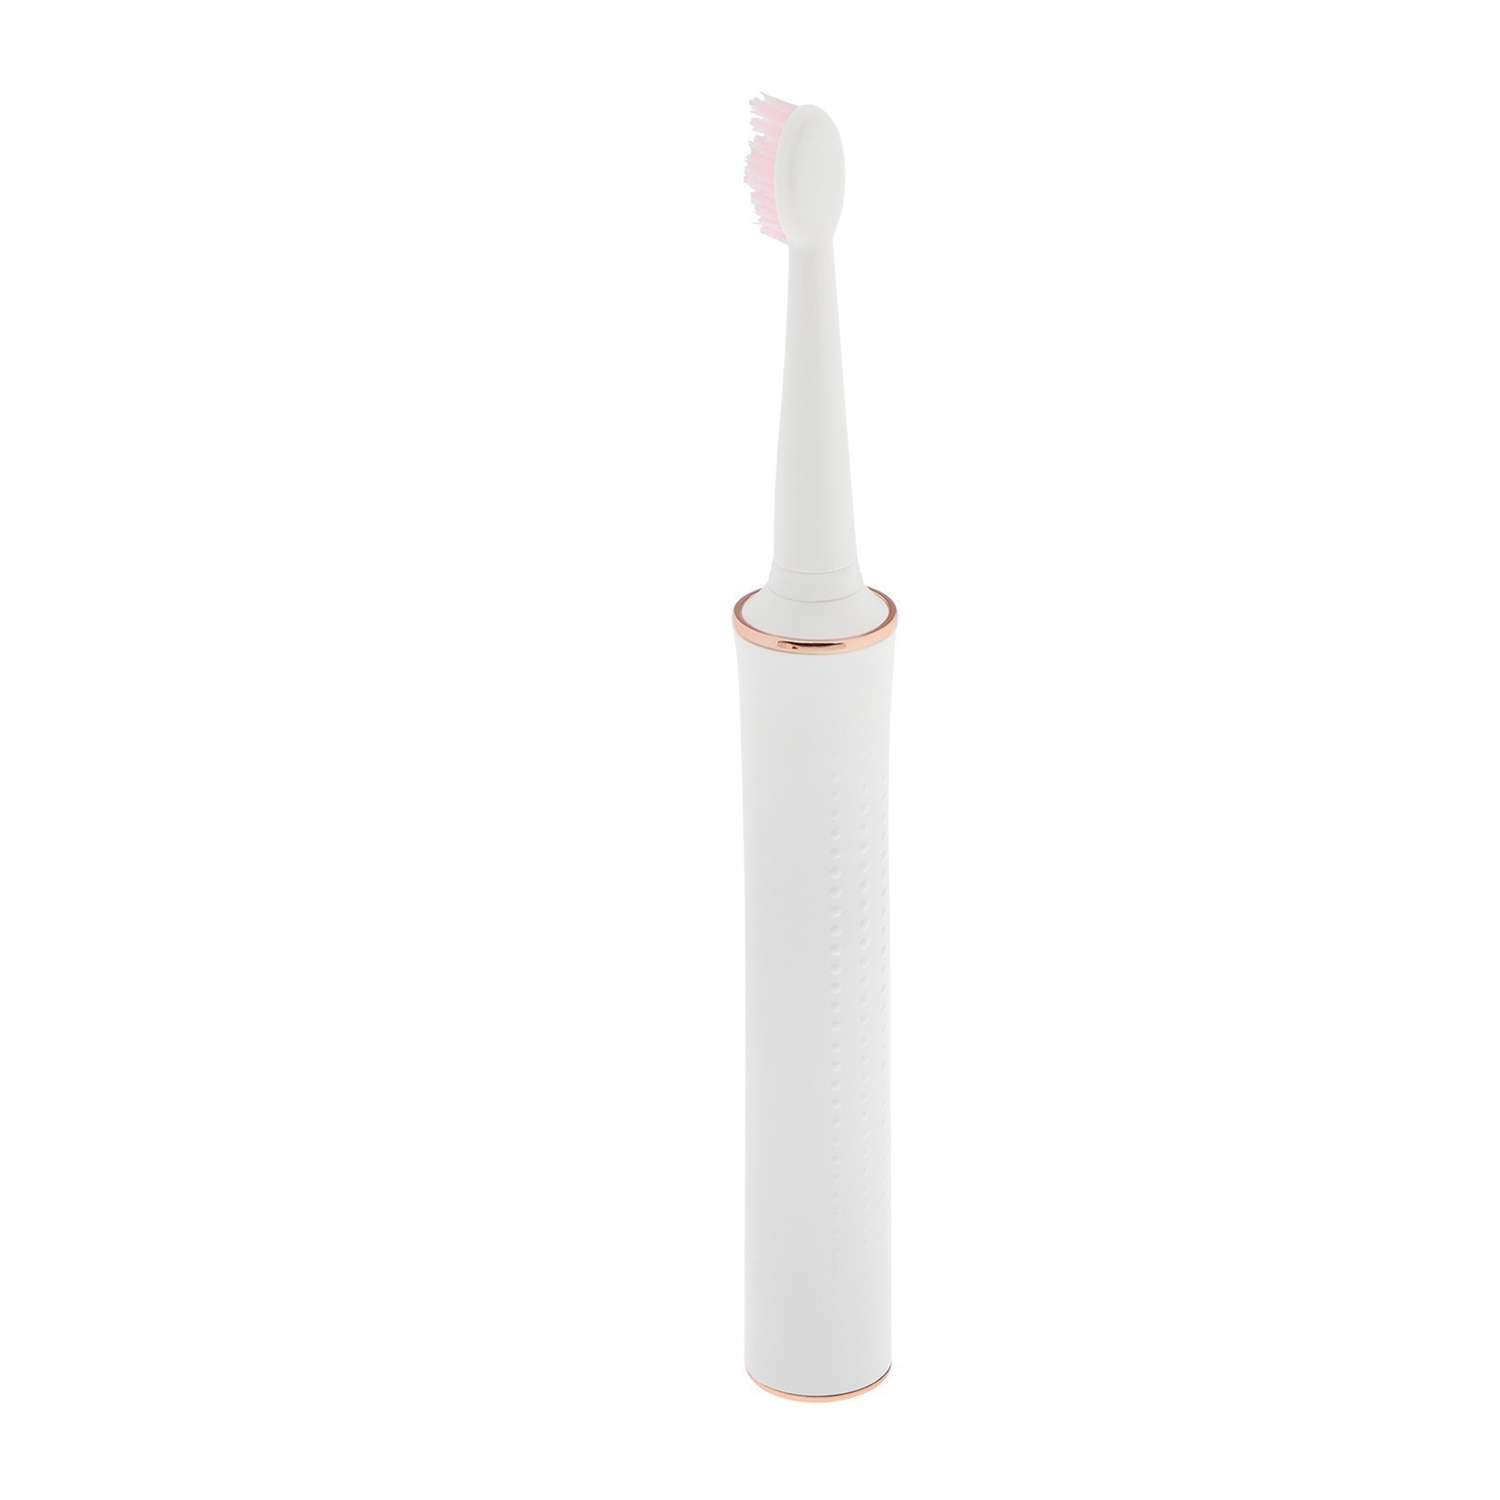 Электрическая зубная щётка Luazon Home LP002 вибрационная 31000 дв/мин 4 насадки АКБ - фото 7